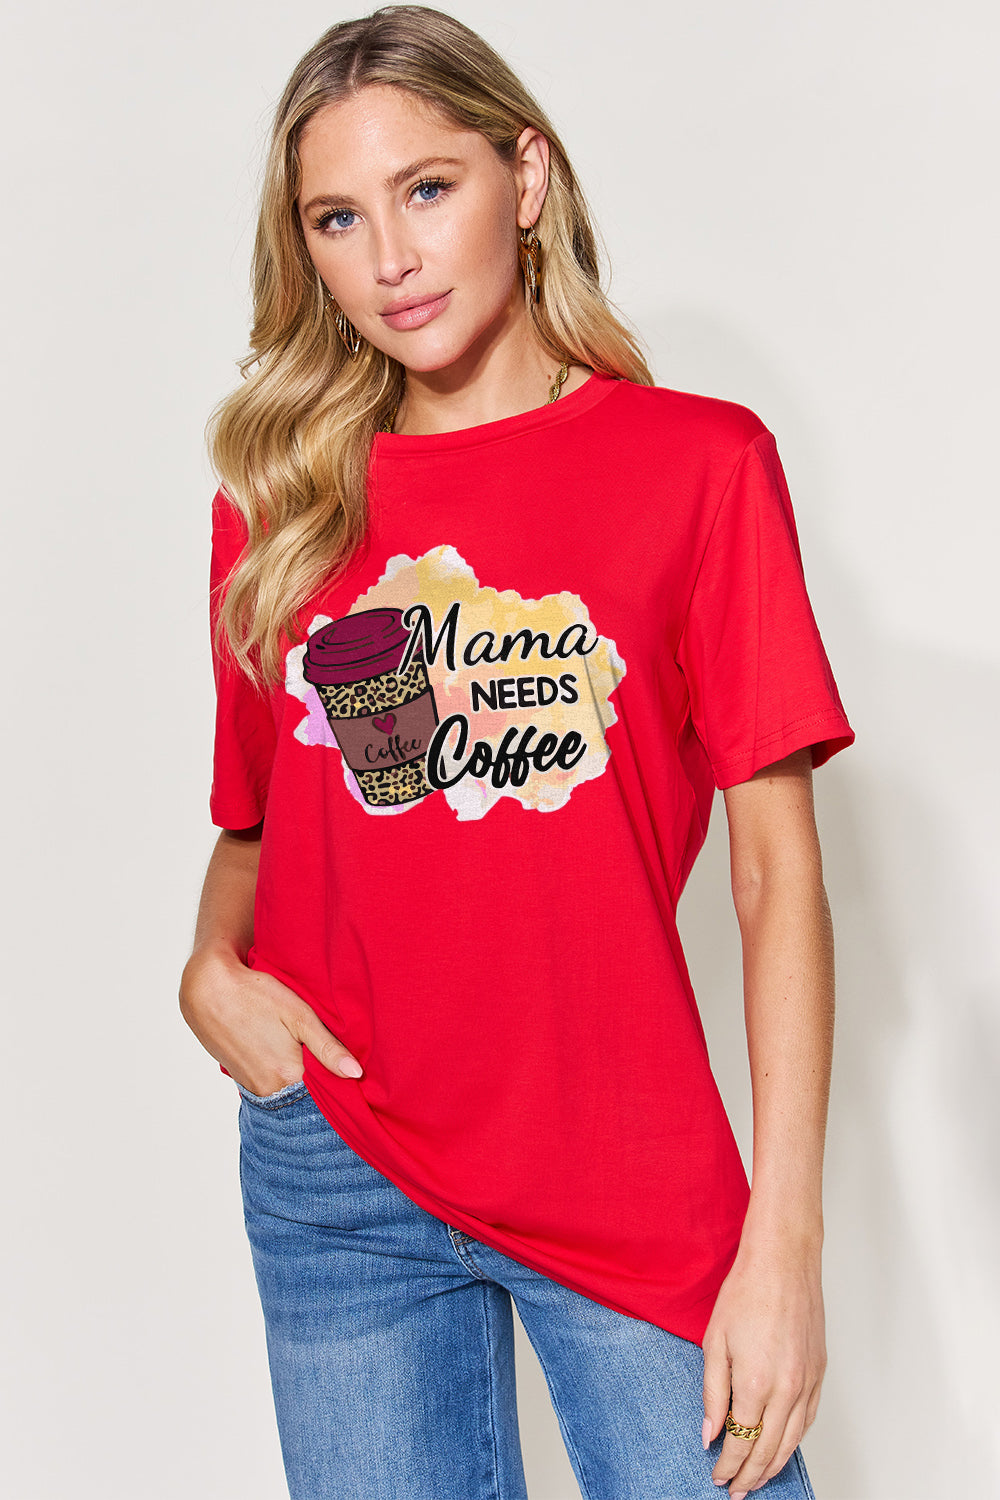 MAMA NEEDS COFFEE Graphic Tee *8 colors*